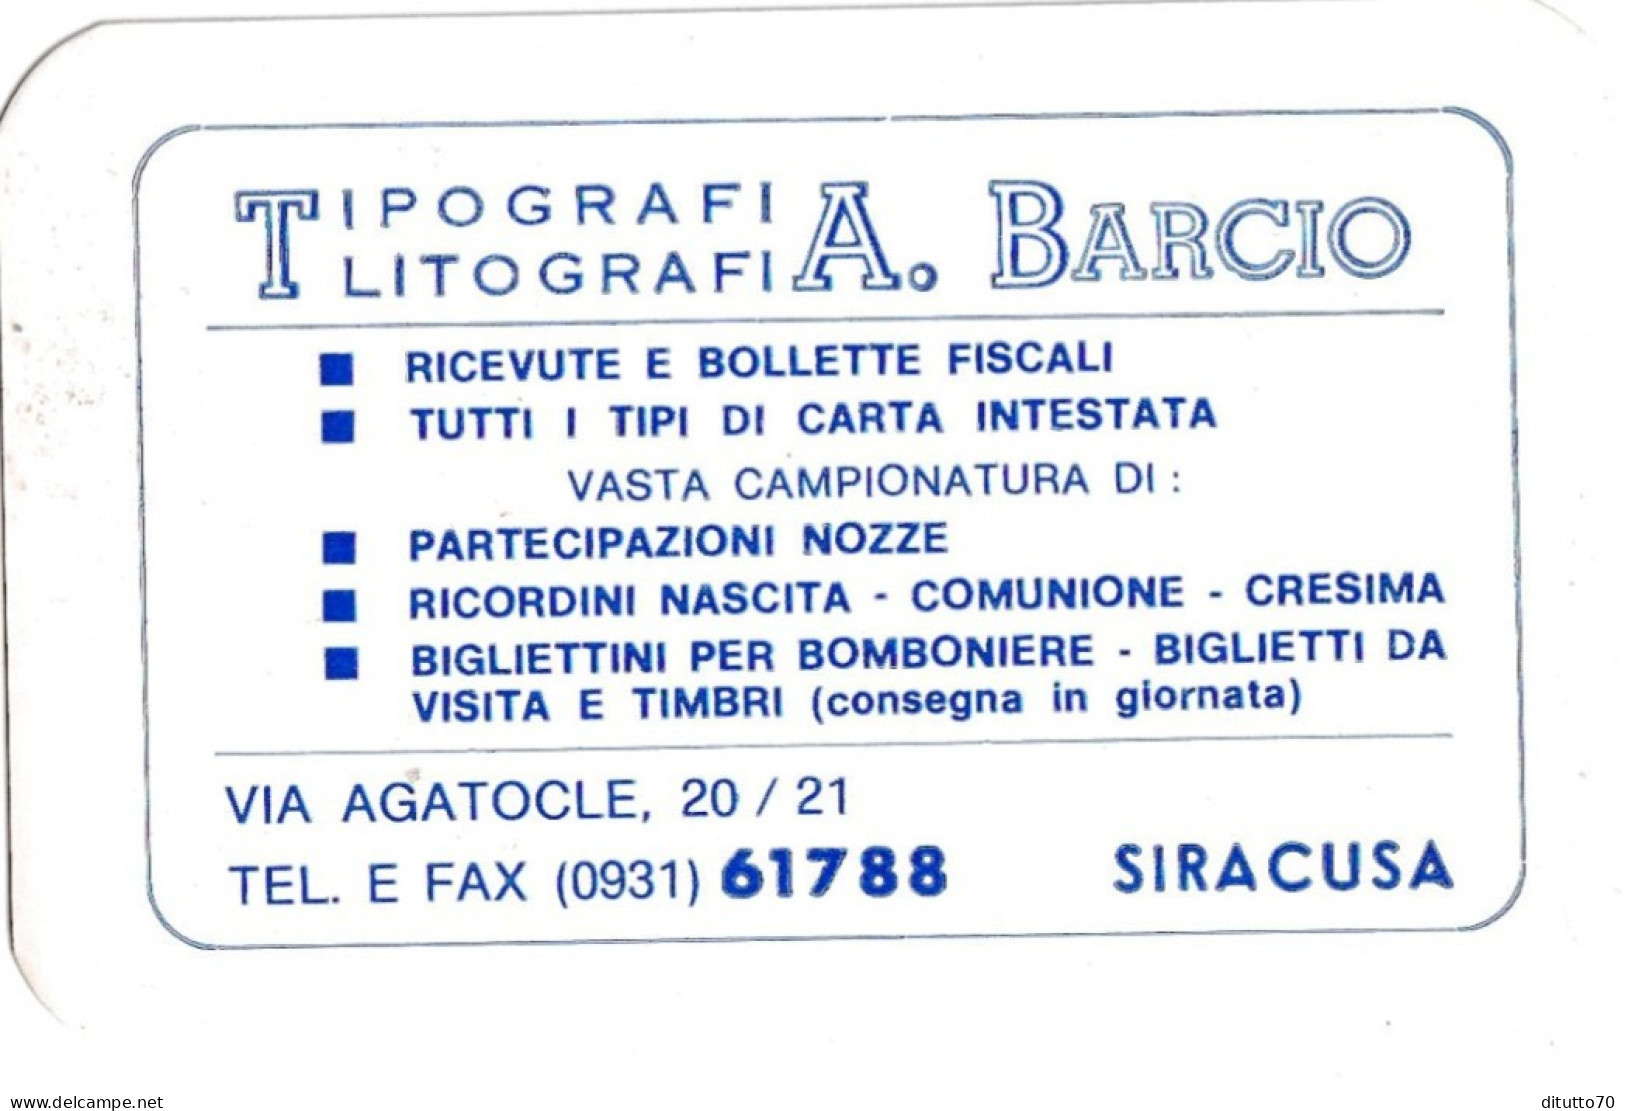 Calendarietto - Tipografia Litografia - A.barcio - Siracusa - Anno 1995 - Small : 1991-00